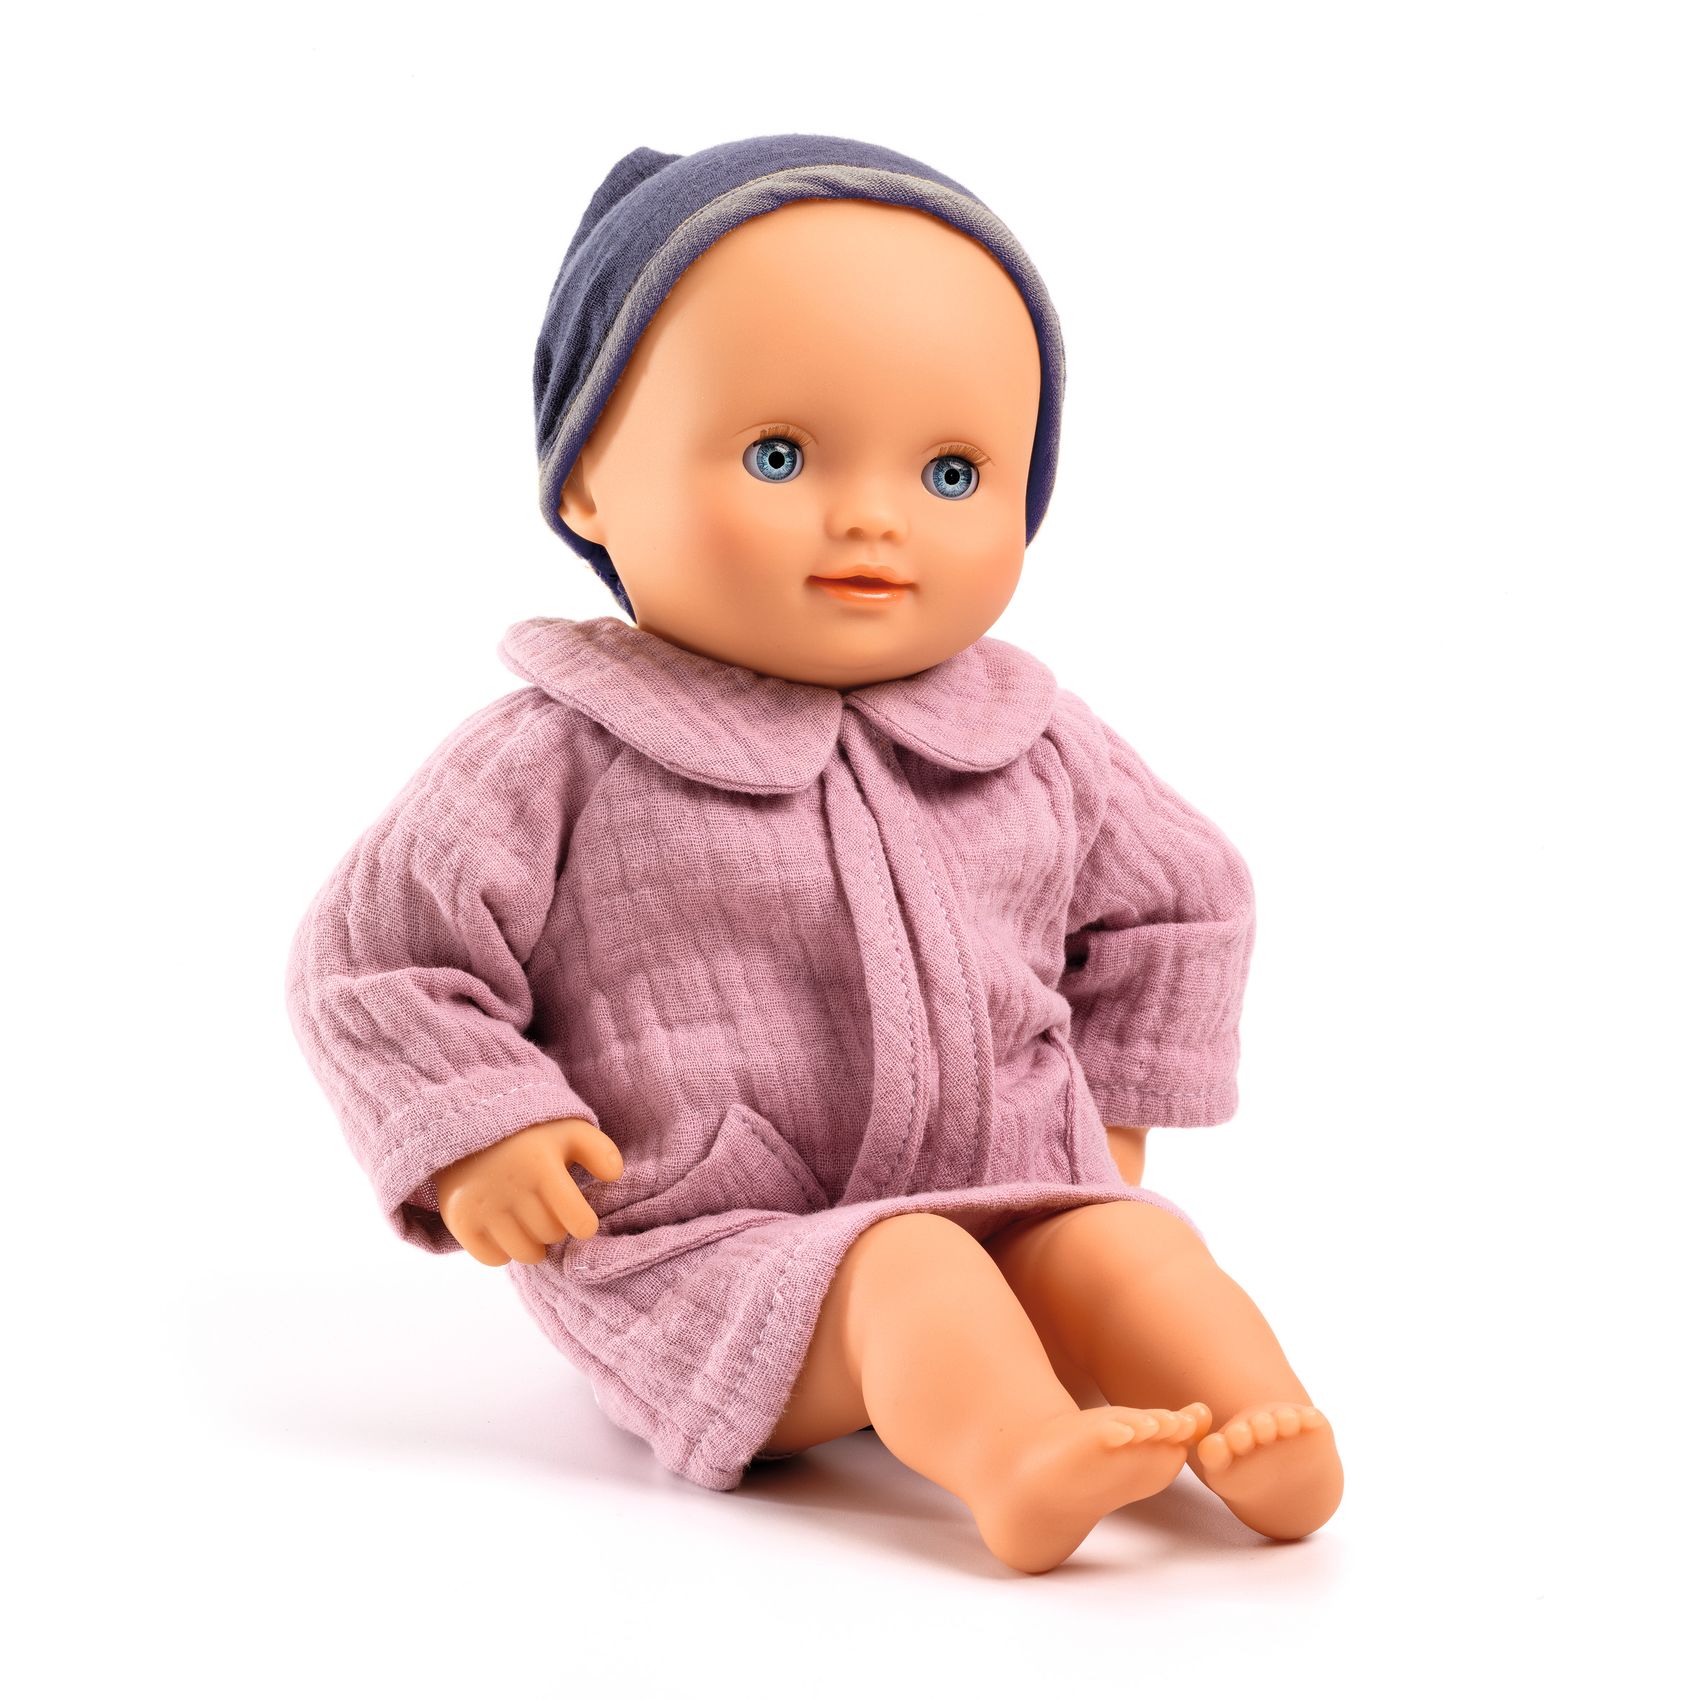 Baby Doll Dahlia by Pomea for Djeco